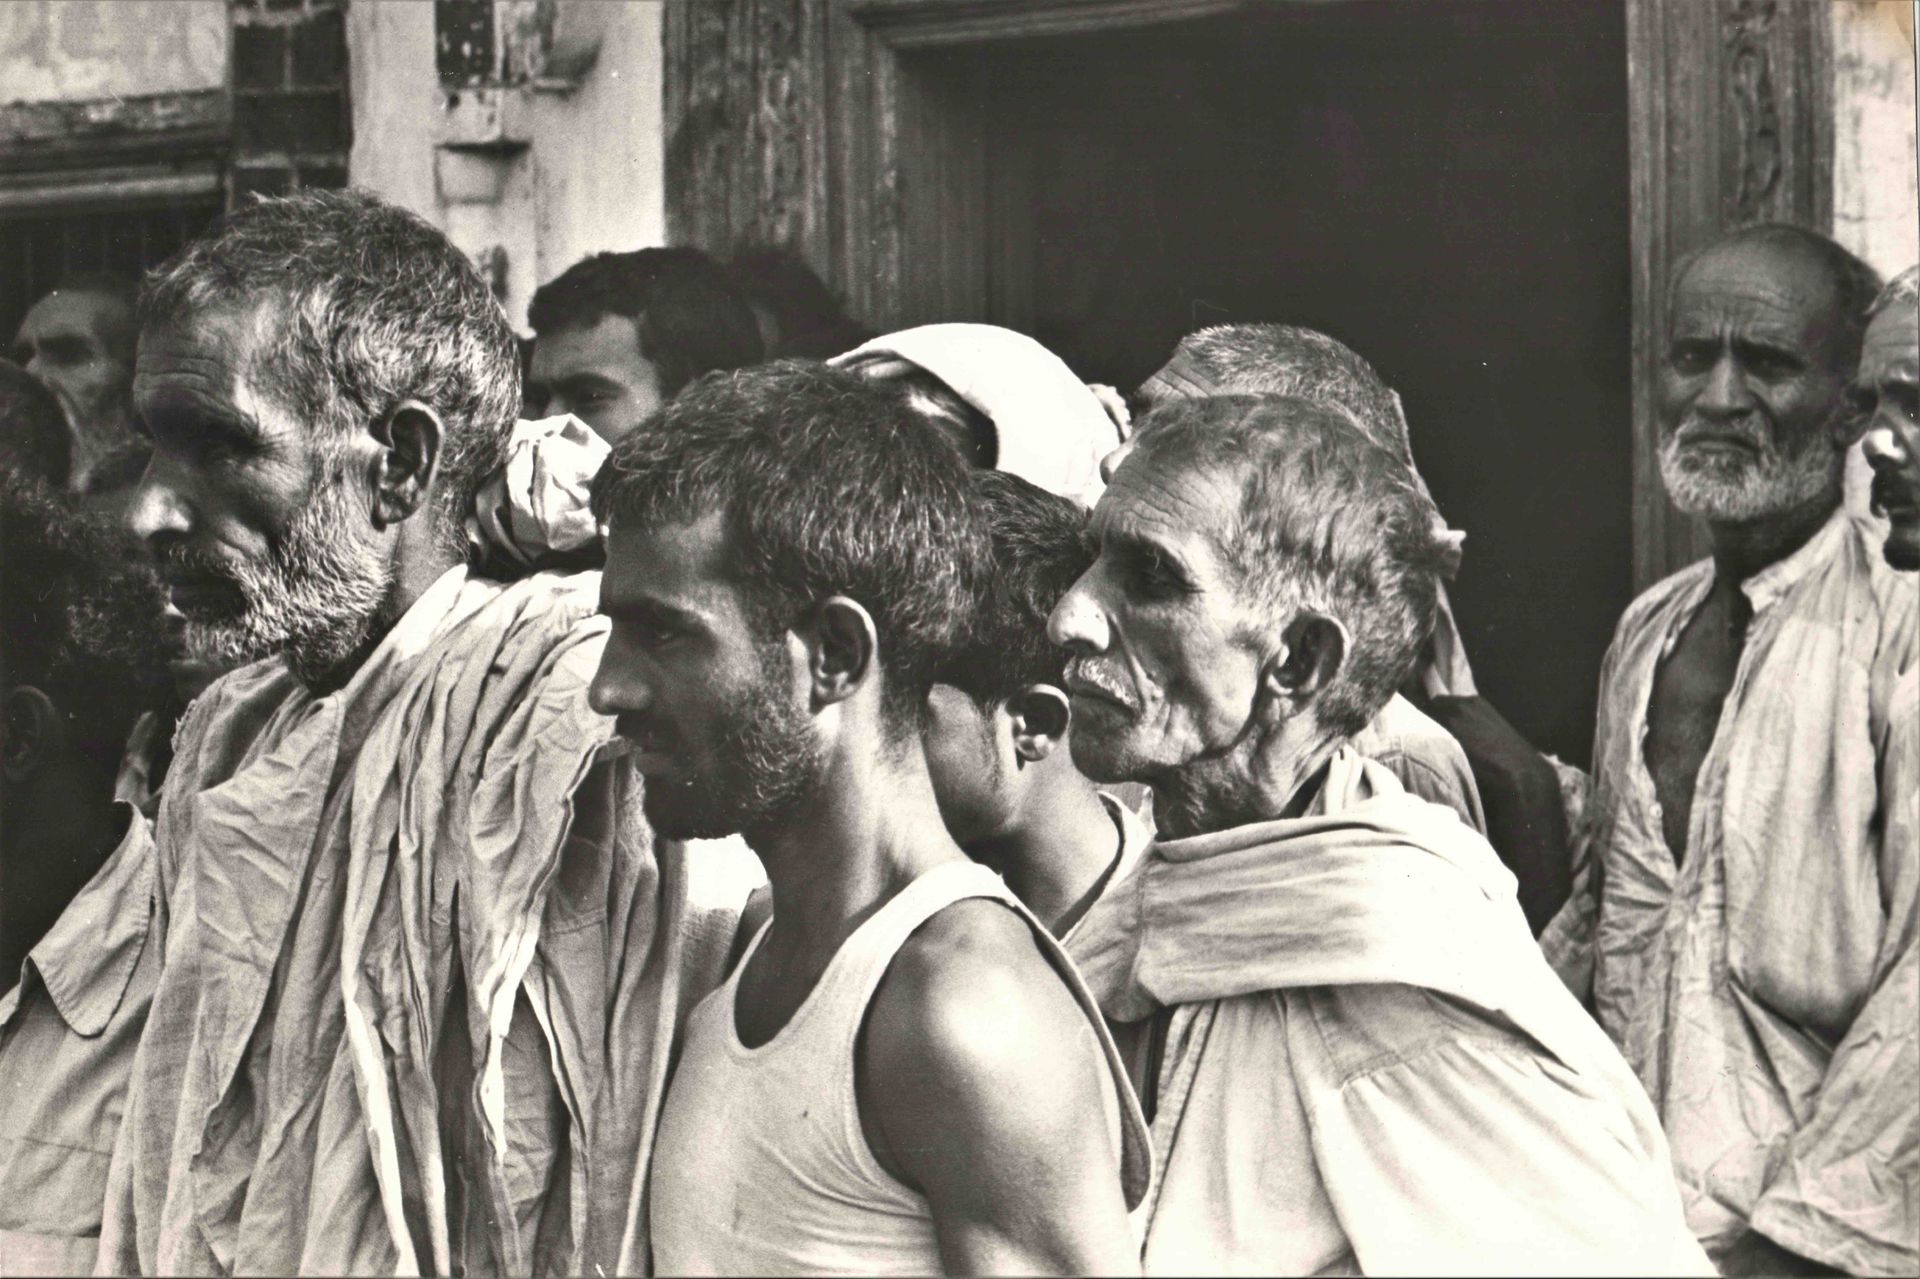 Null 在一个冲突地区的报道，可能是巴基斯坦。一套3幅银质摄影作品，约1970年，平均尺寸30 x 20厘米。非常强烈的照片。